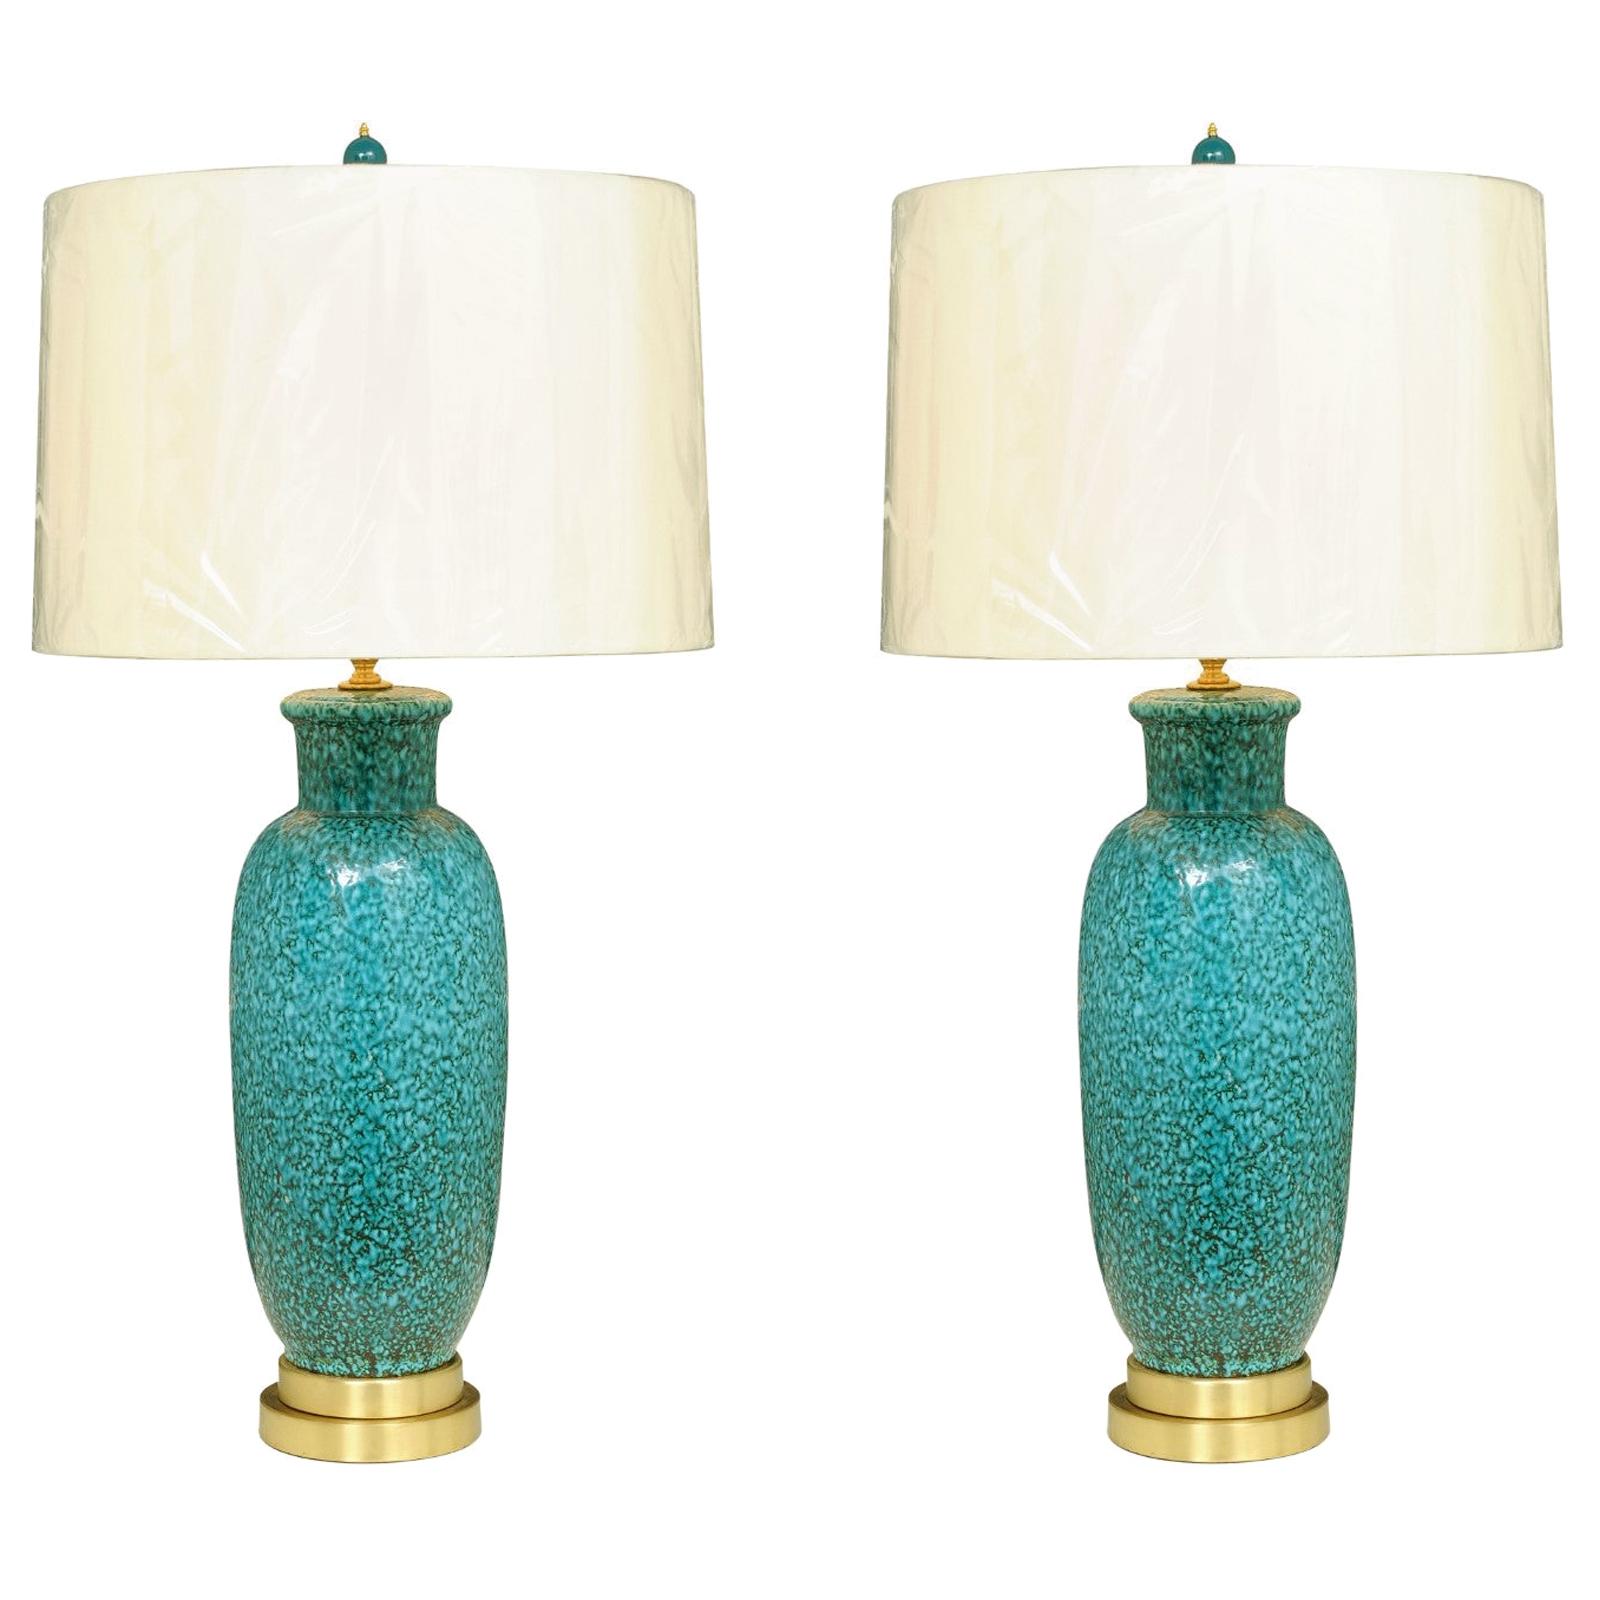 Exceptional Pair of Restored Italian Ceramic Lamps in Turquoise, circa 1960